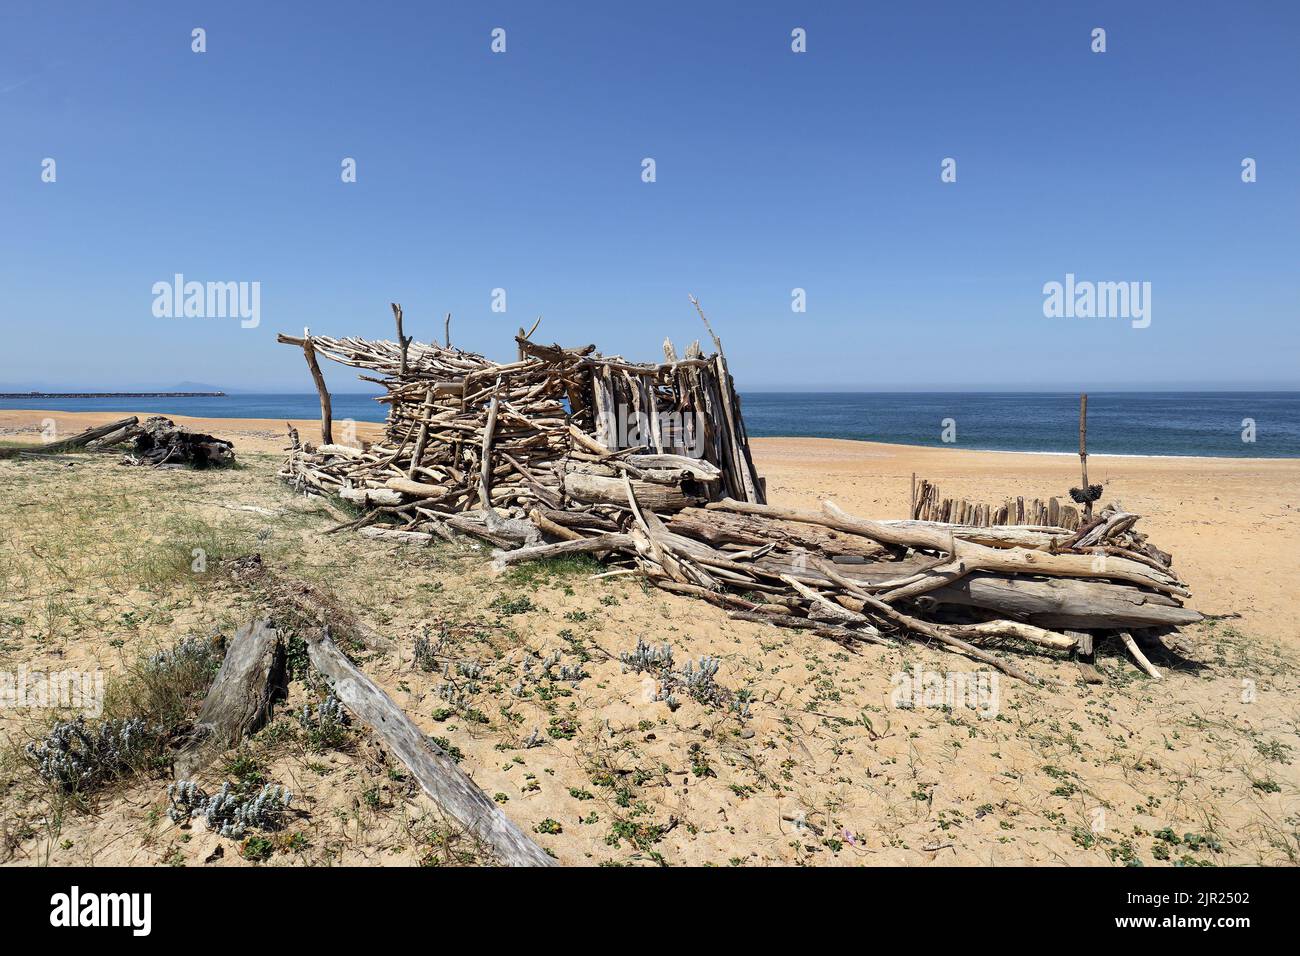 Structure construite à partir de Driftwood sur une paisible plage de sable, Capbreton, Landes, sud-ouest, France Banque D'Images